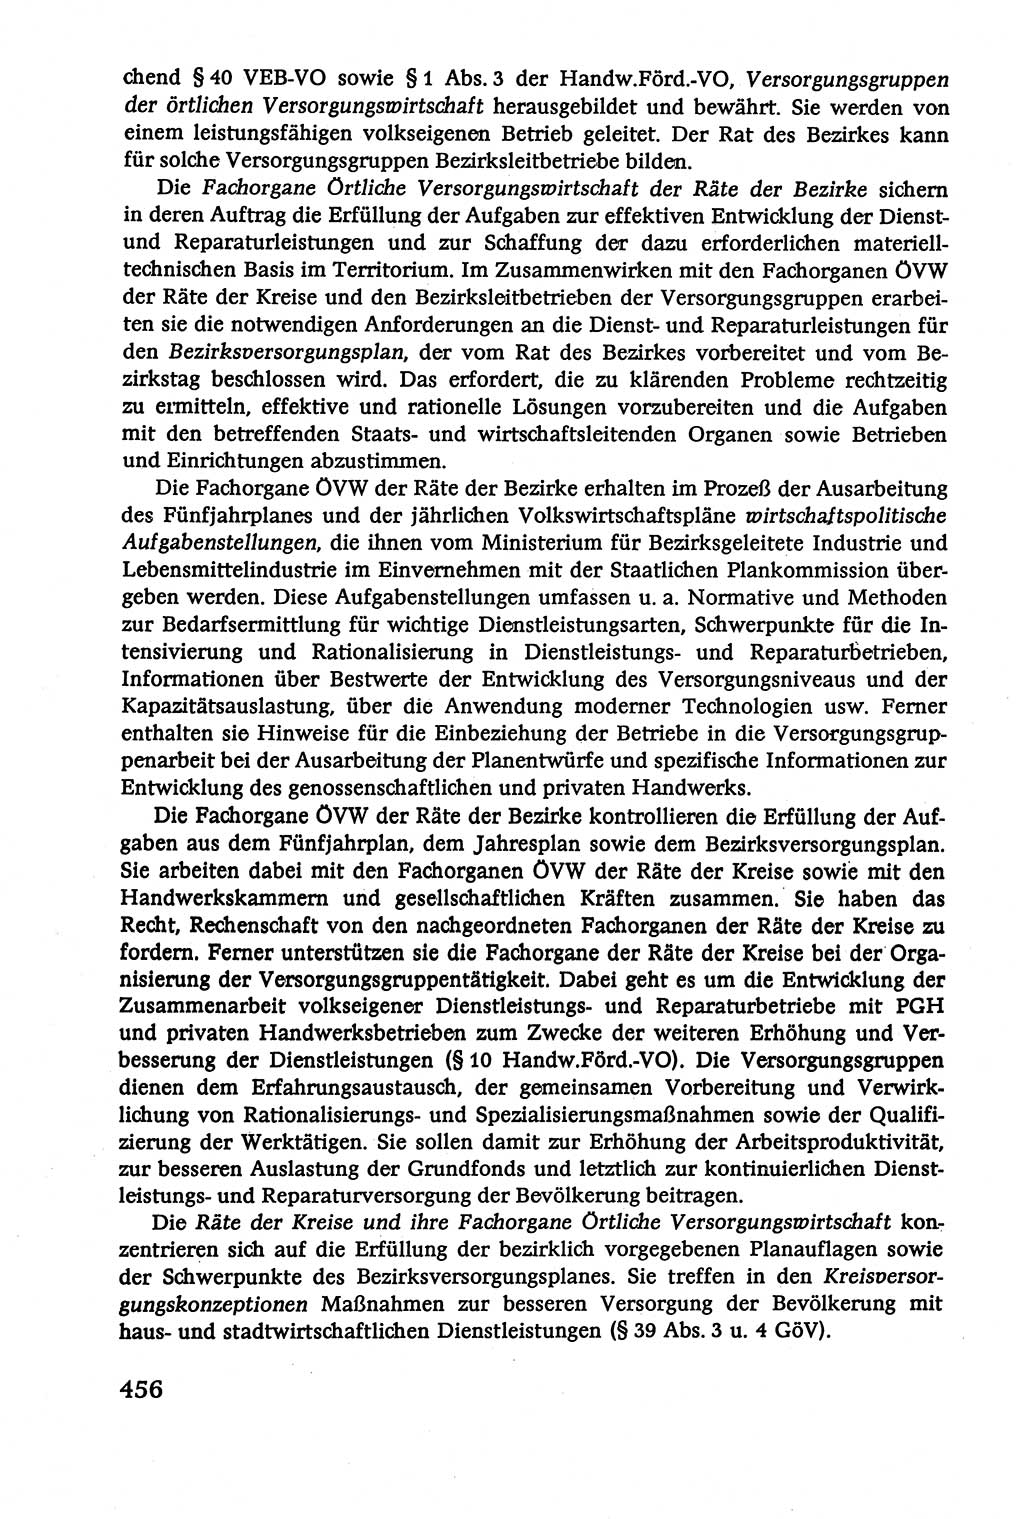 Verwaltungsrecht [Deutsche Demokratische Republik (DDR)], Lehrbuch 1979, Seite 456 (Verw.-R. DDR Lb. 1979, S. 456)